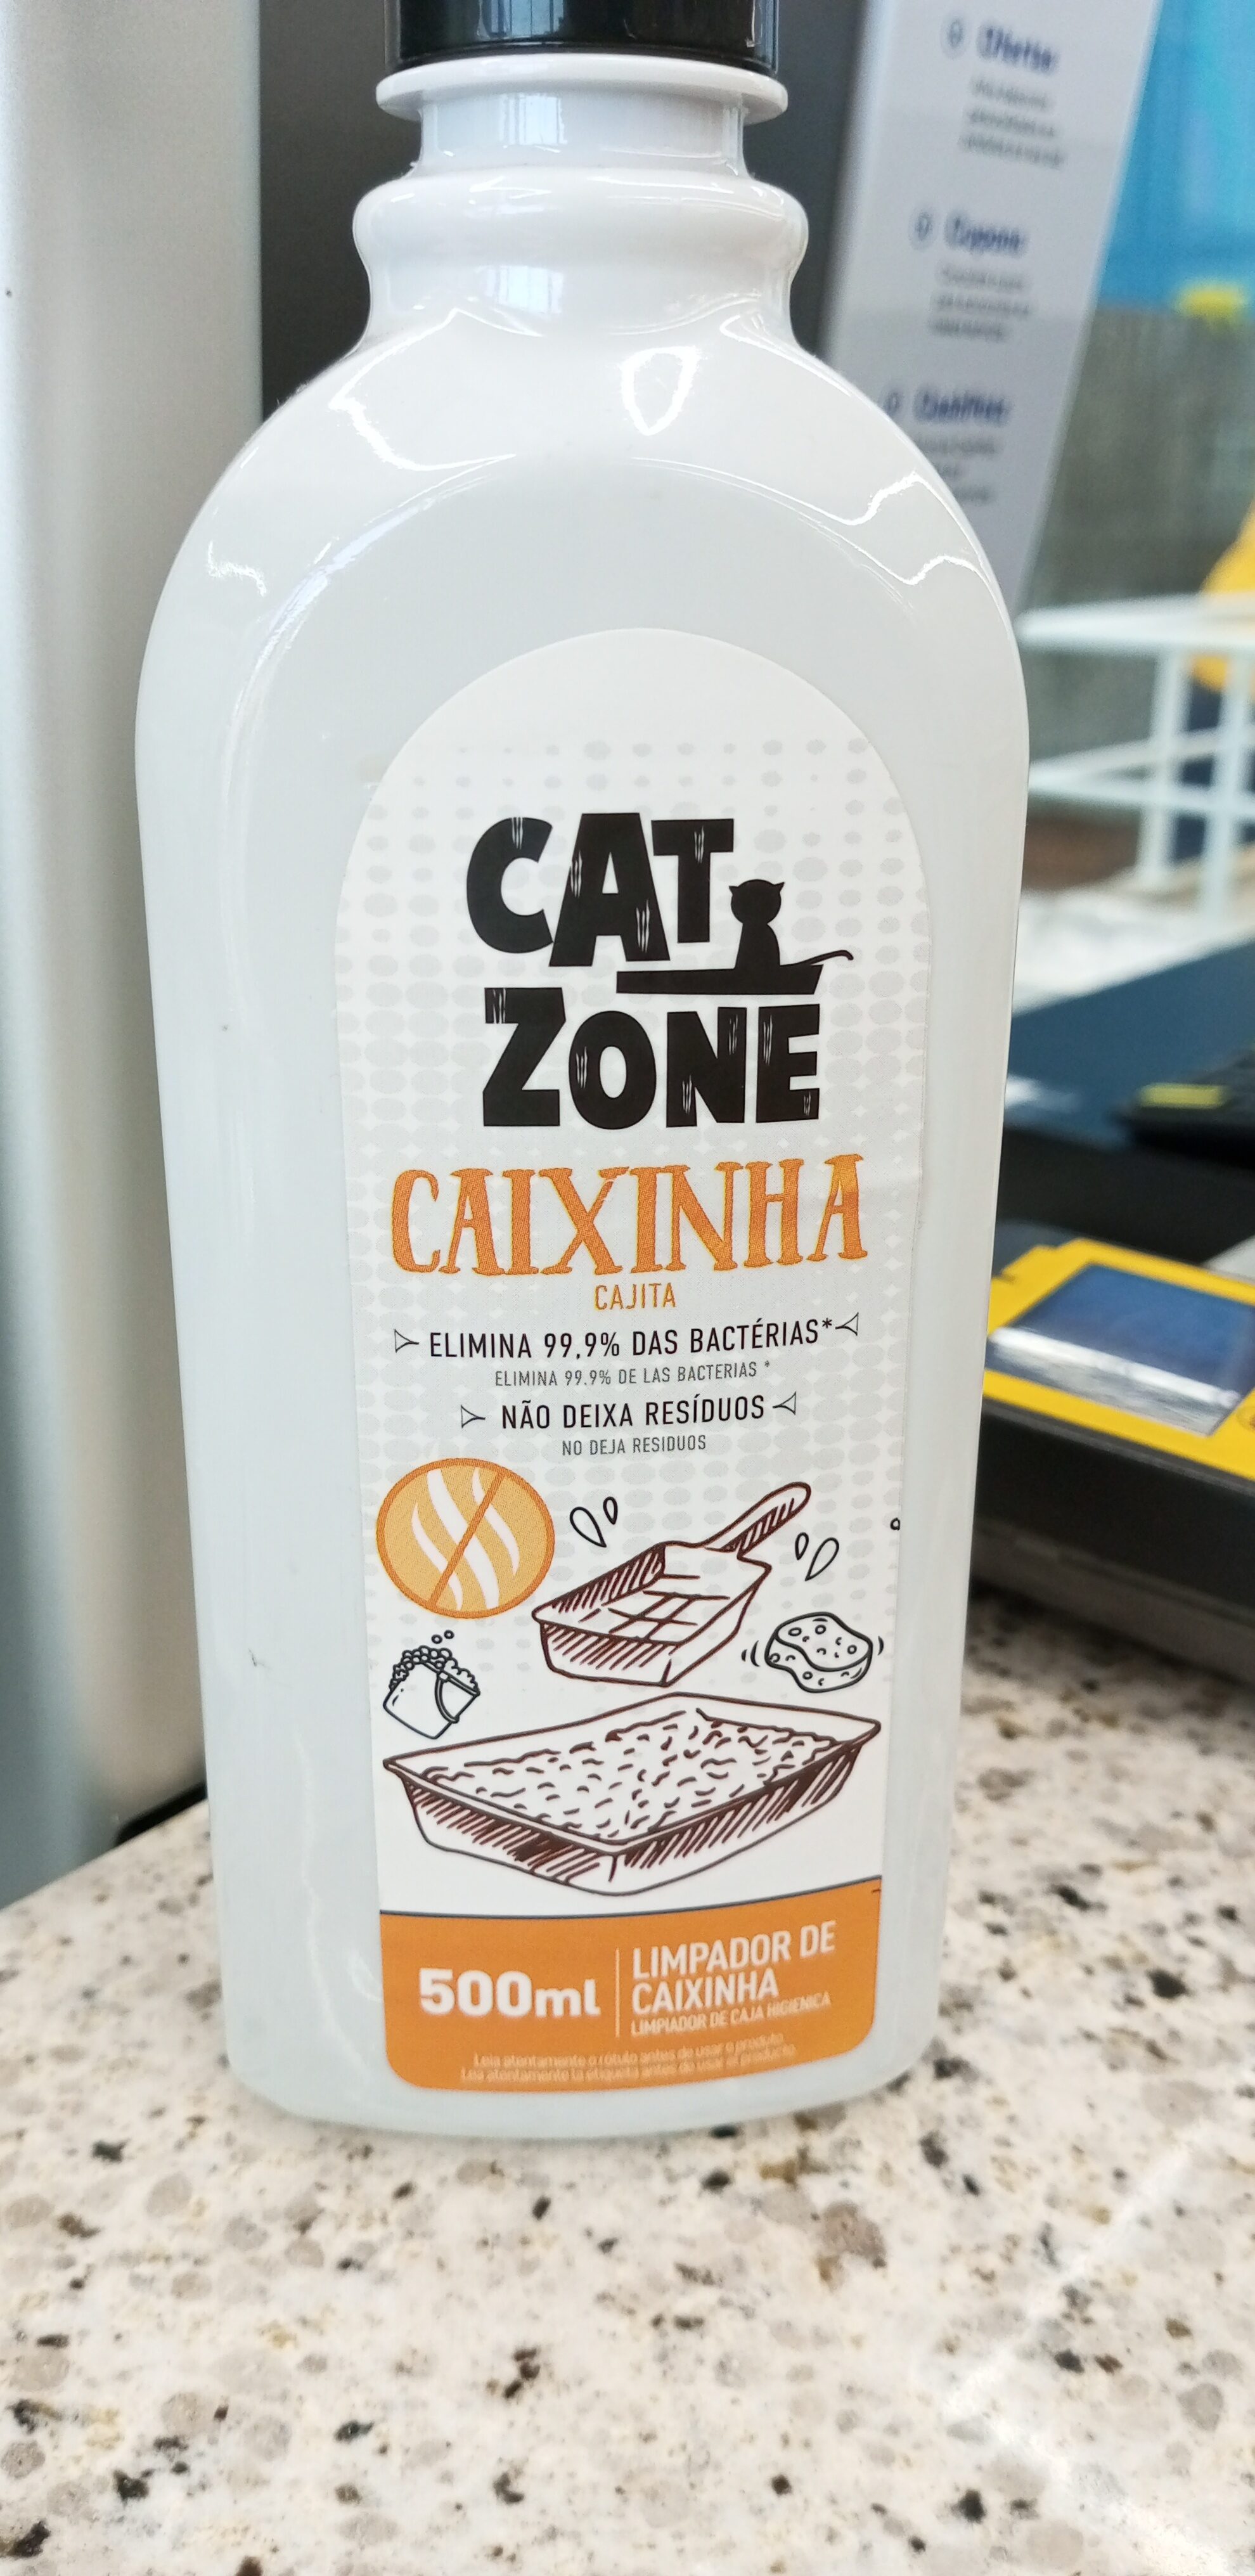 Elim.odor cat zone caixinha - Product - pt